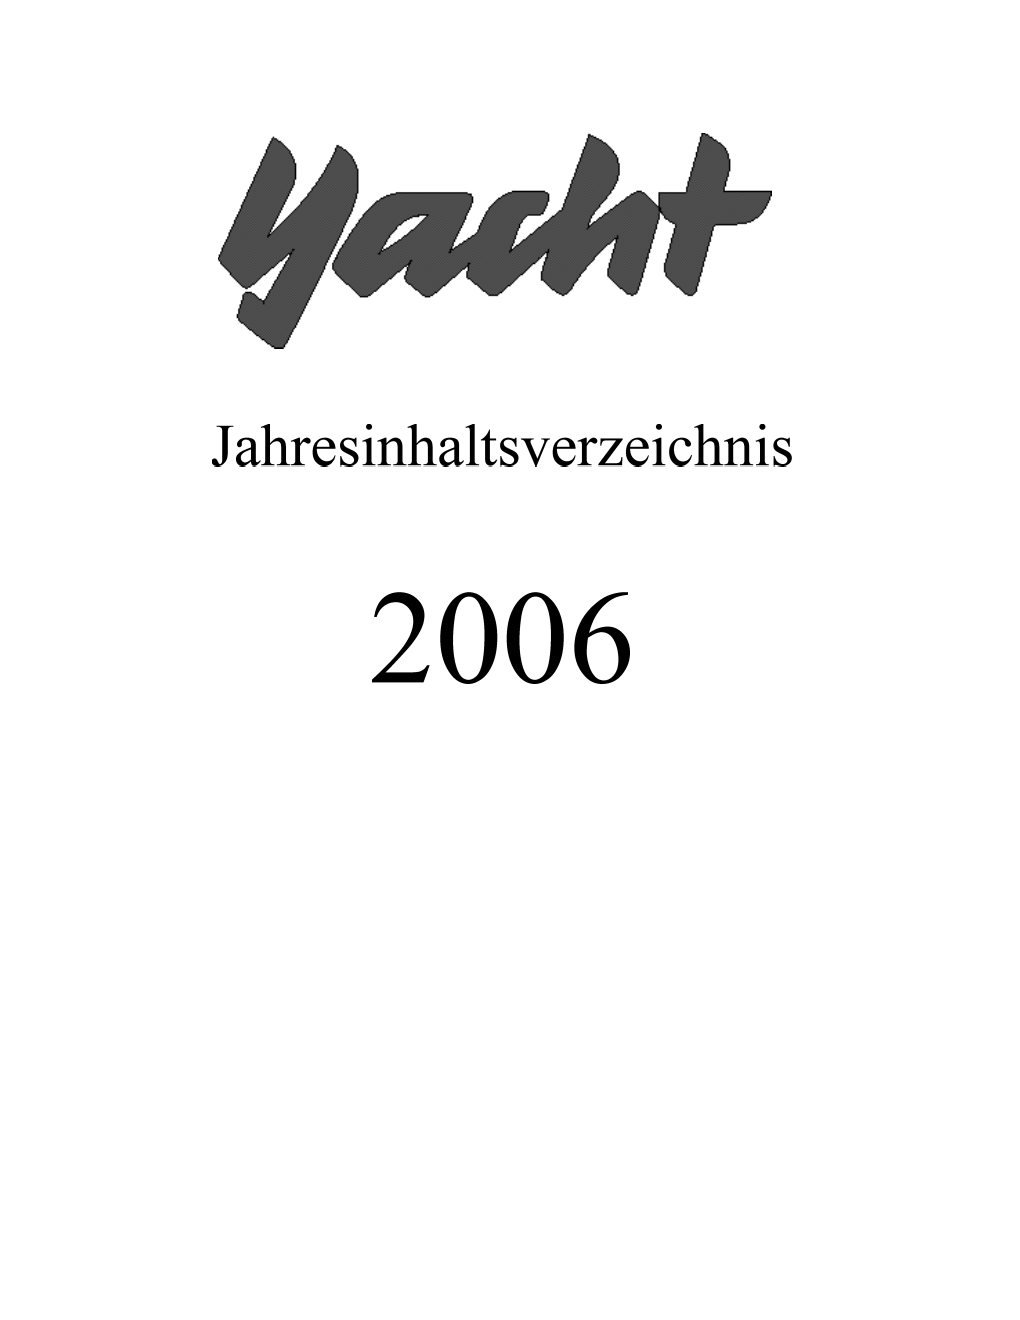 Jahresinhaltsverzeichnis 2006.Pdf